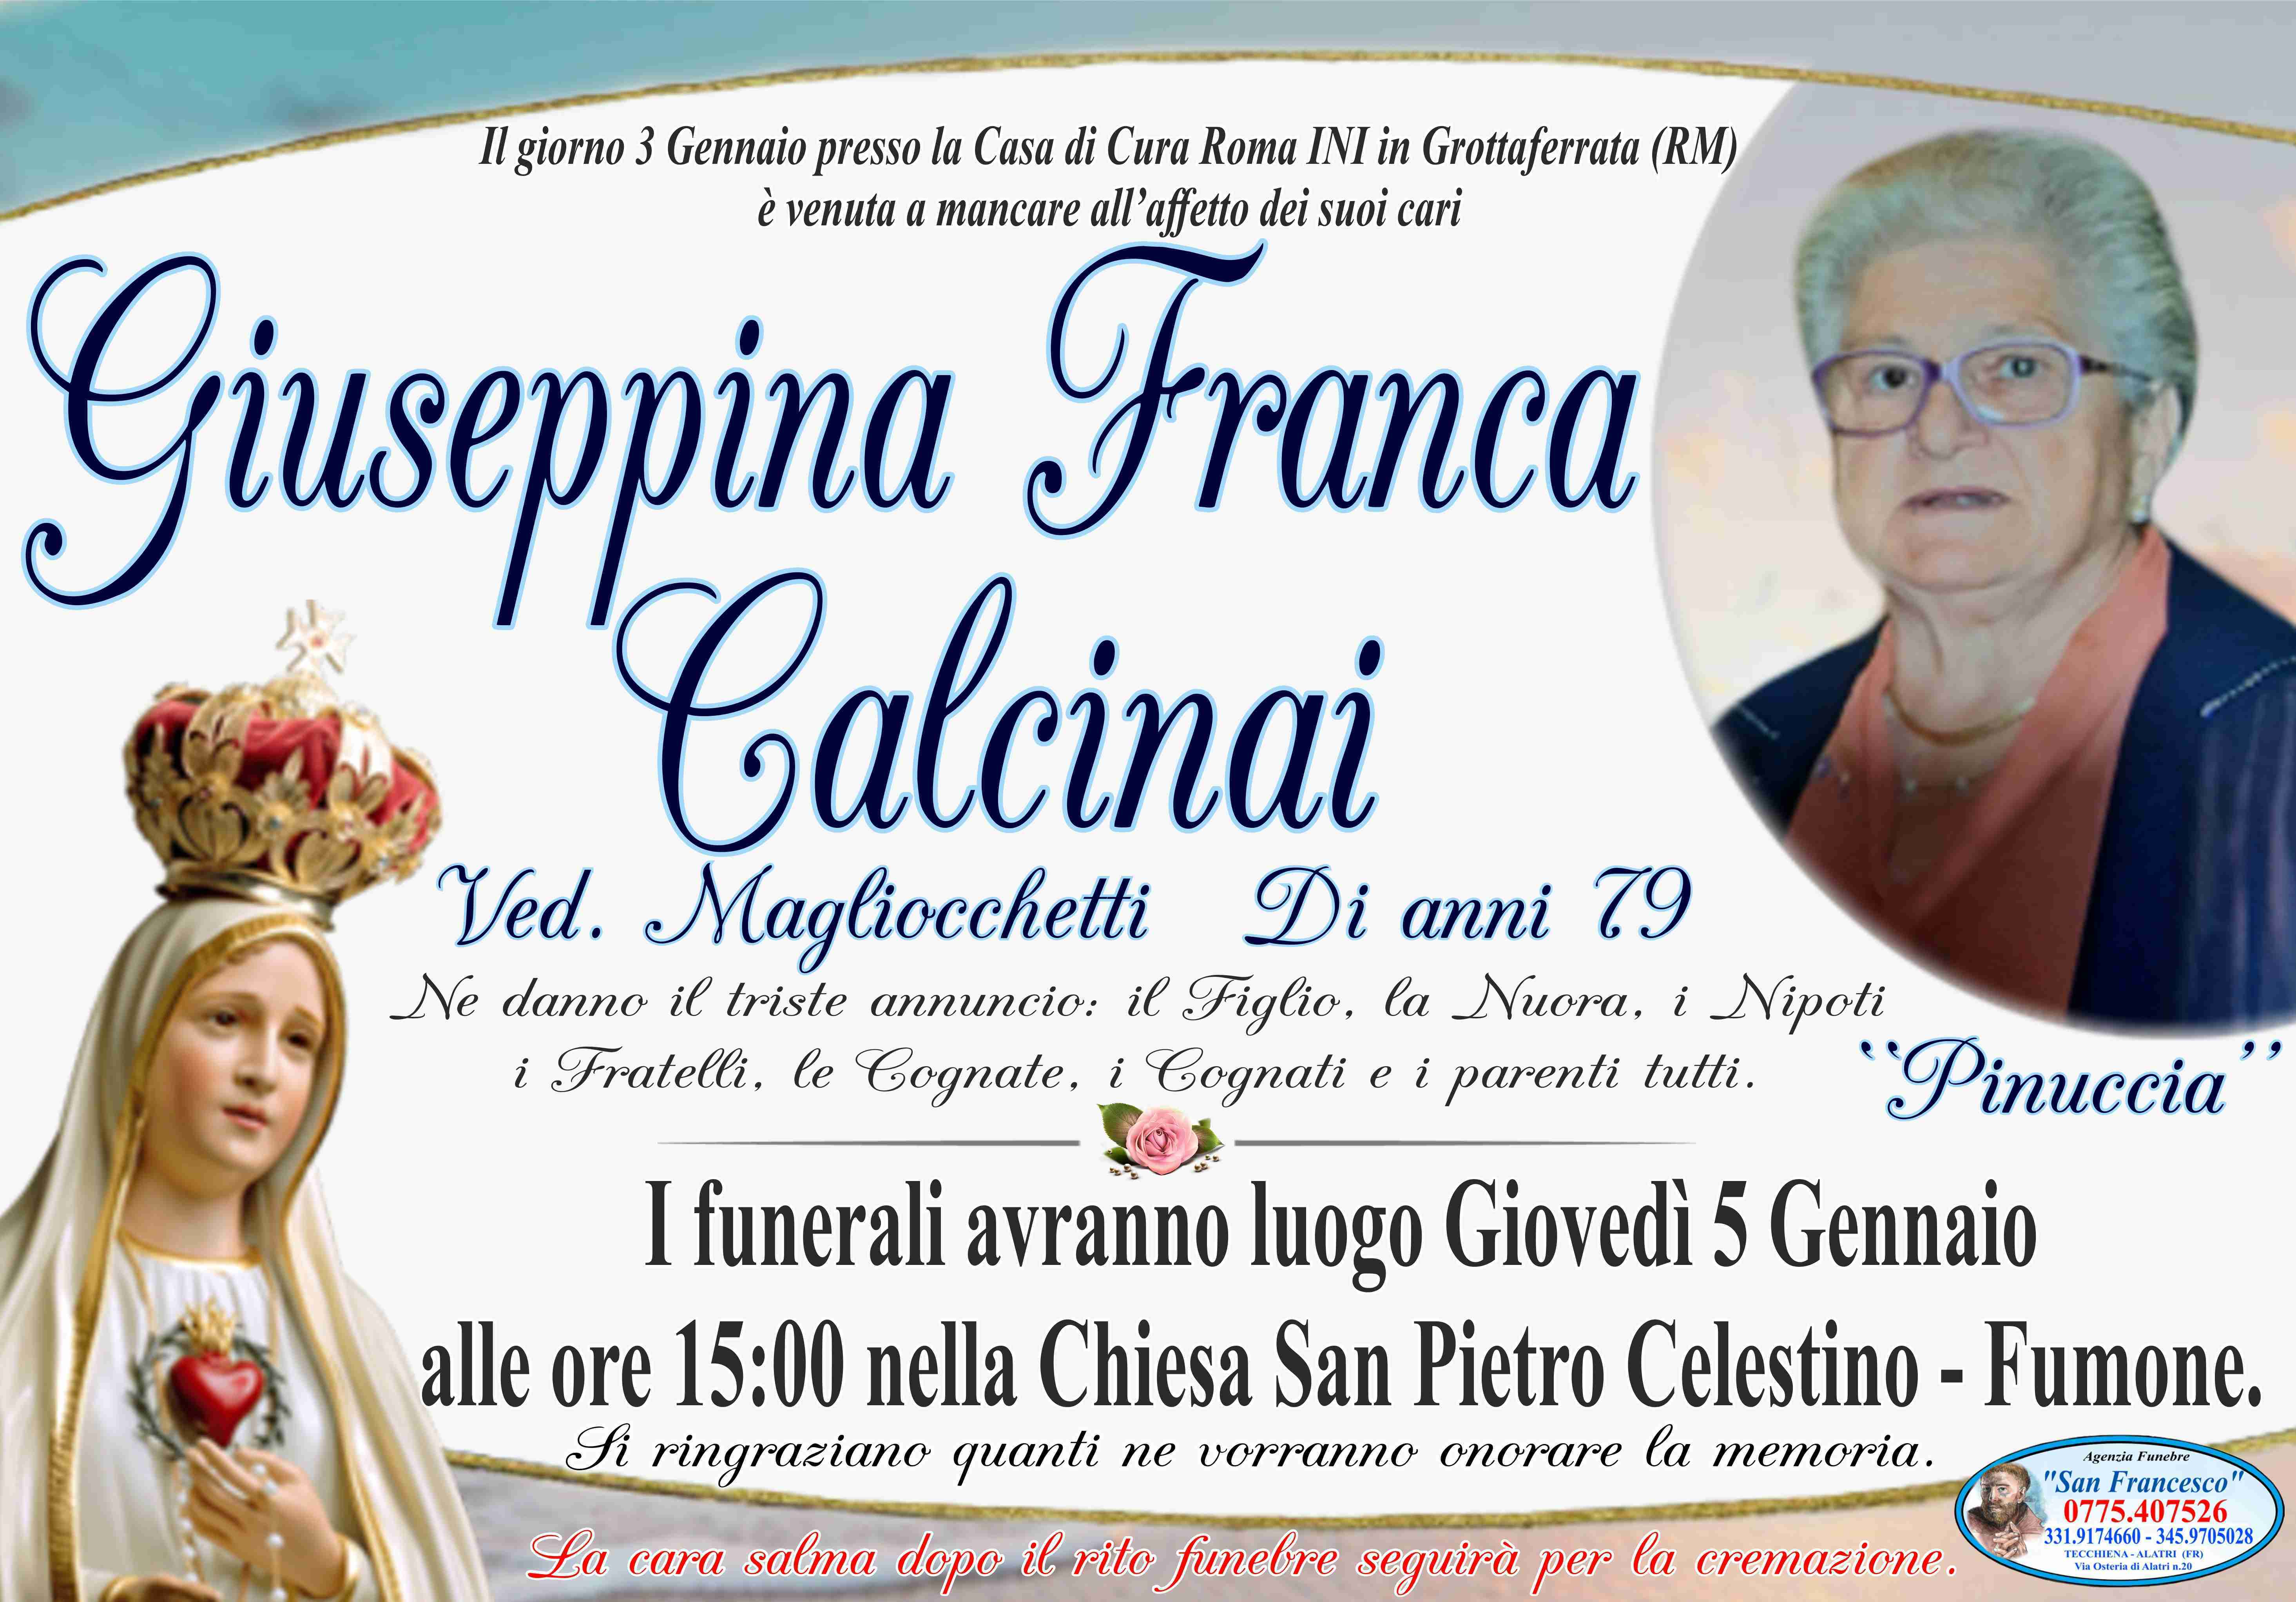 Giuseppina Franca Calcinai